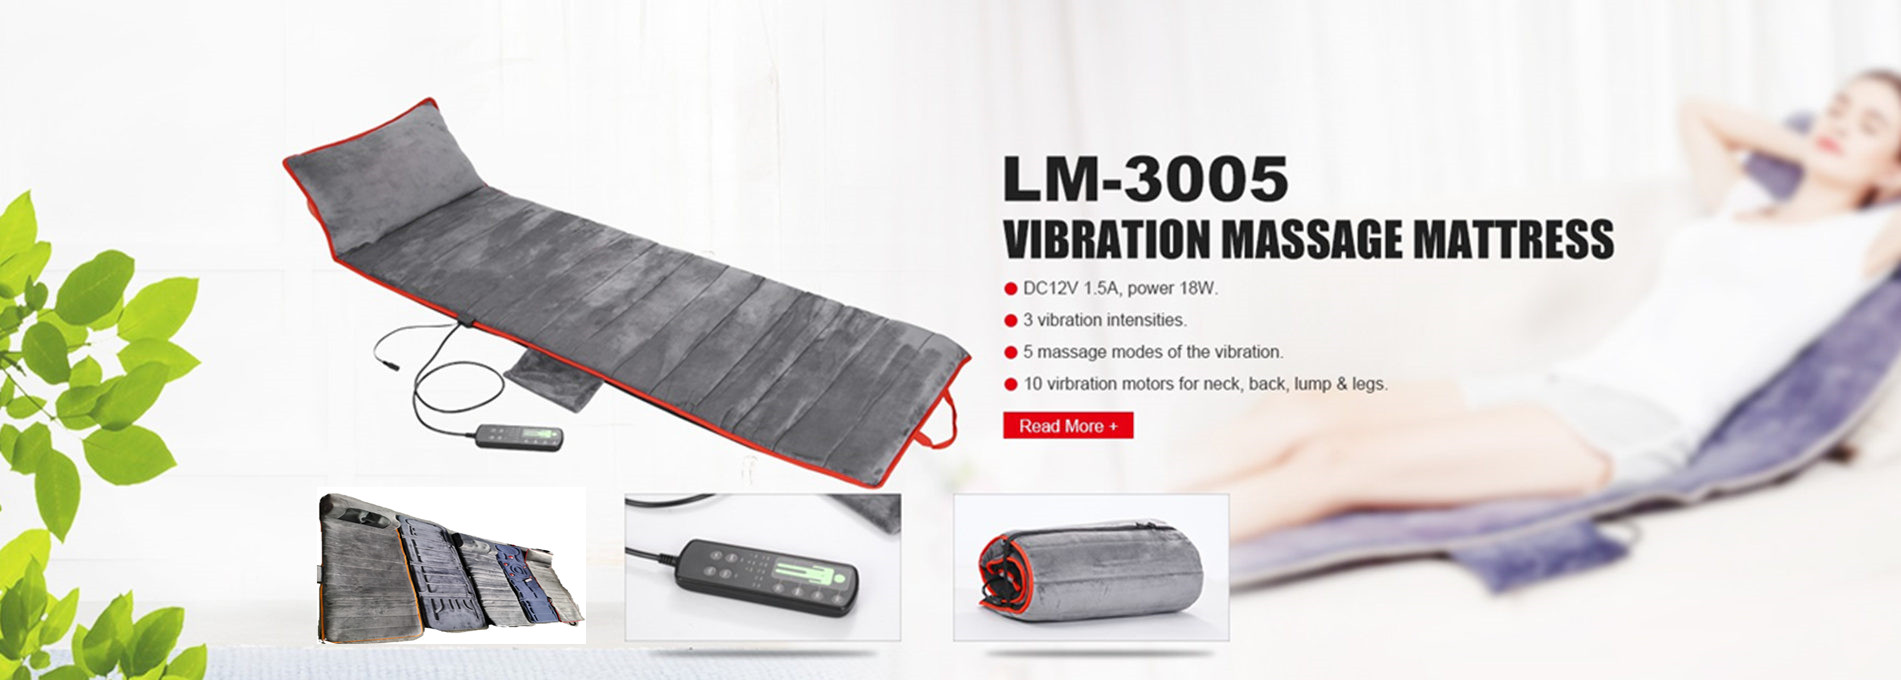 shiatsu vibration massage mattress